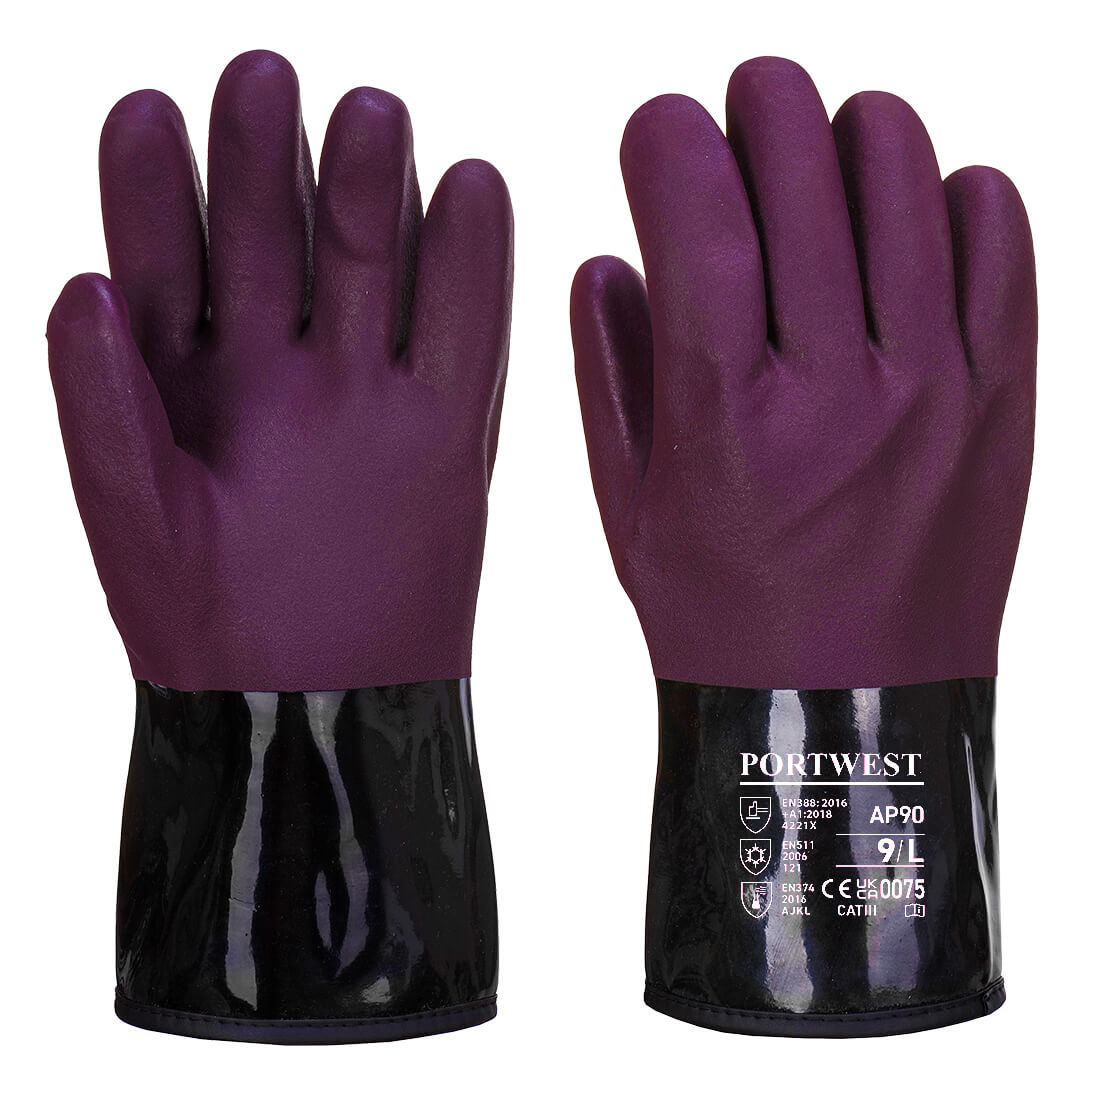 Chemtherm Glove - Purple/Black